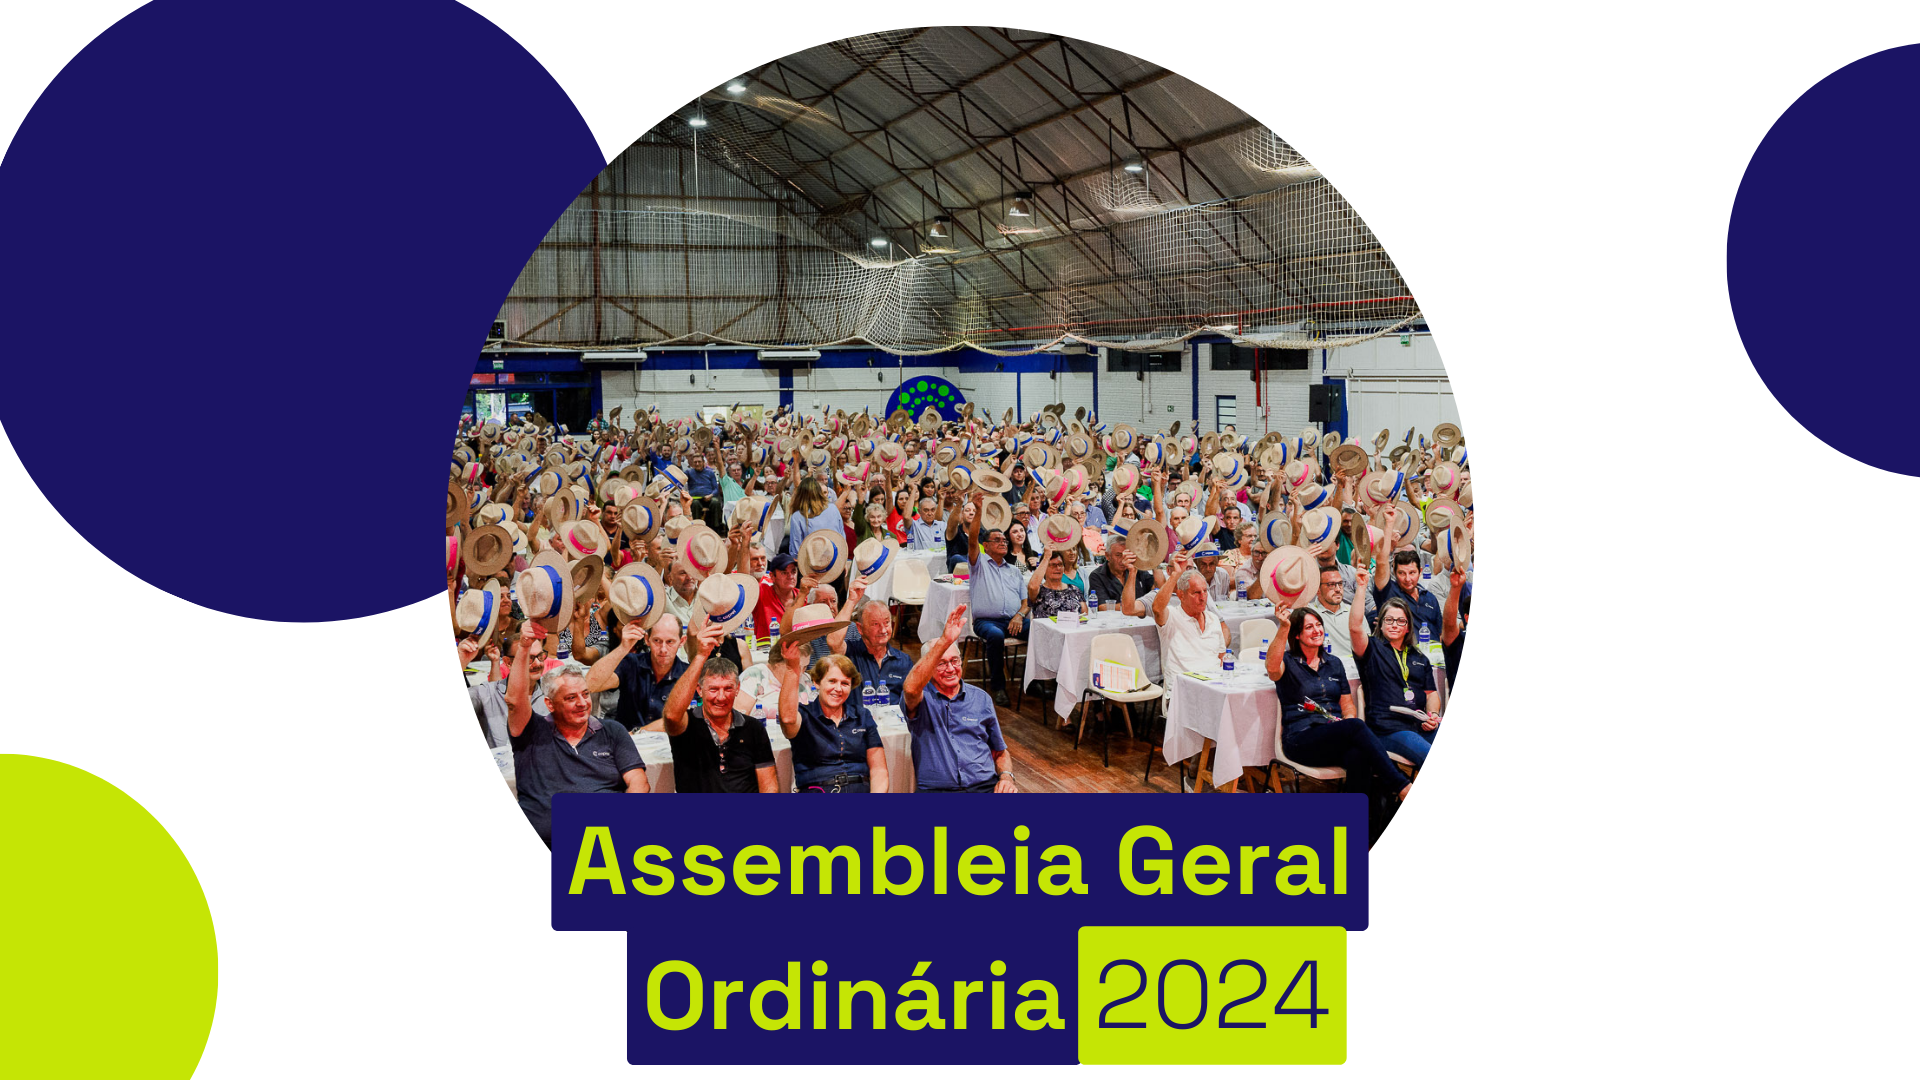 Assembleia Geral Ordinária da Coprel foi realizada com a participação de 959 cooperantes